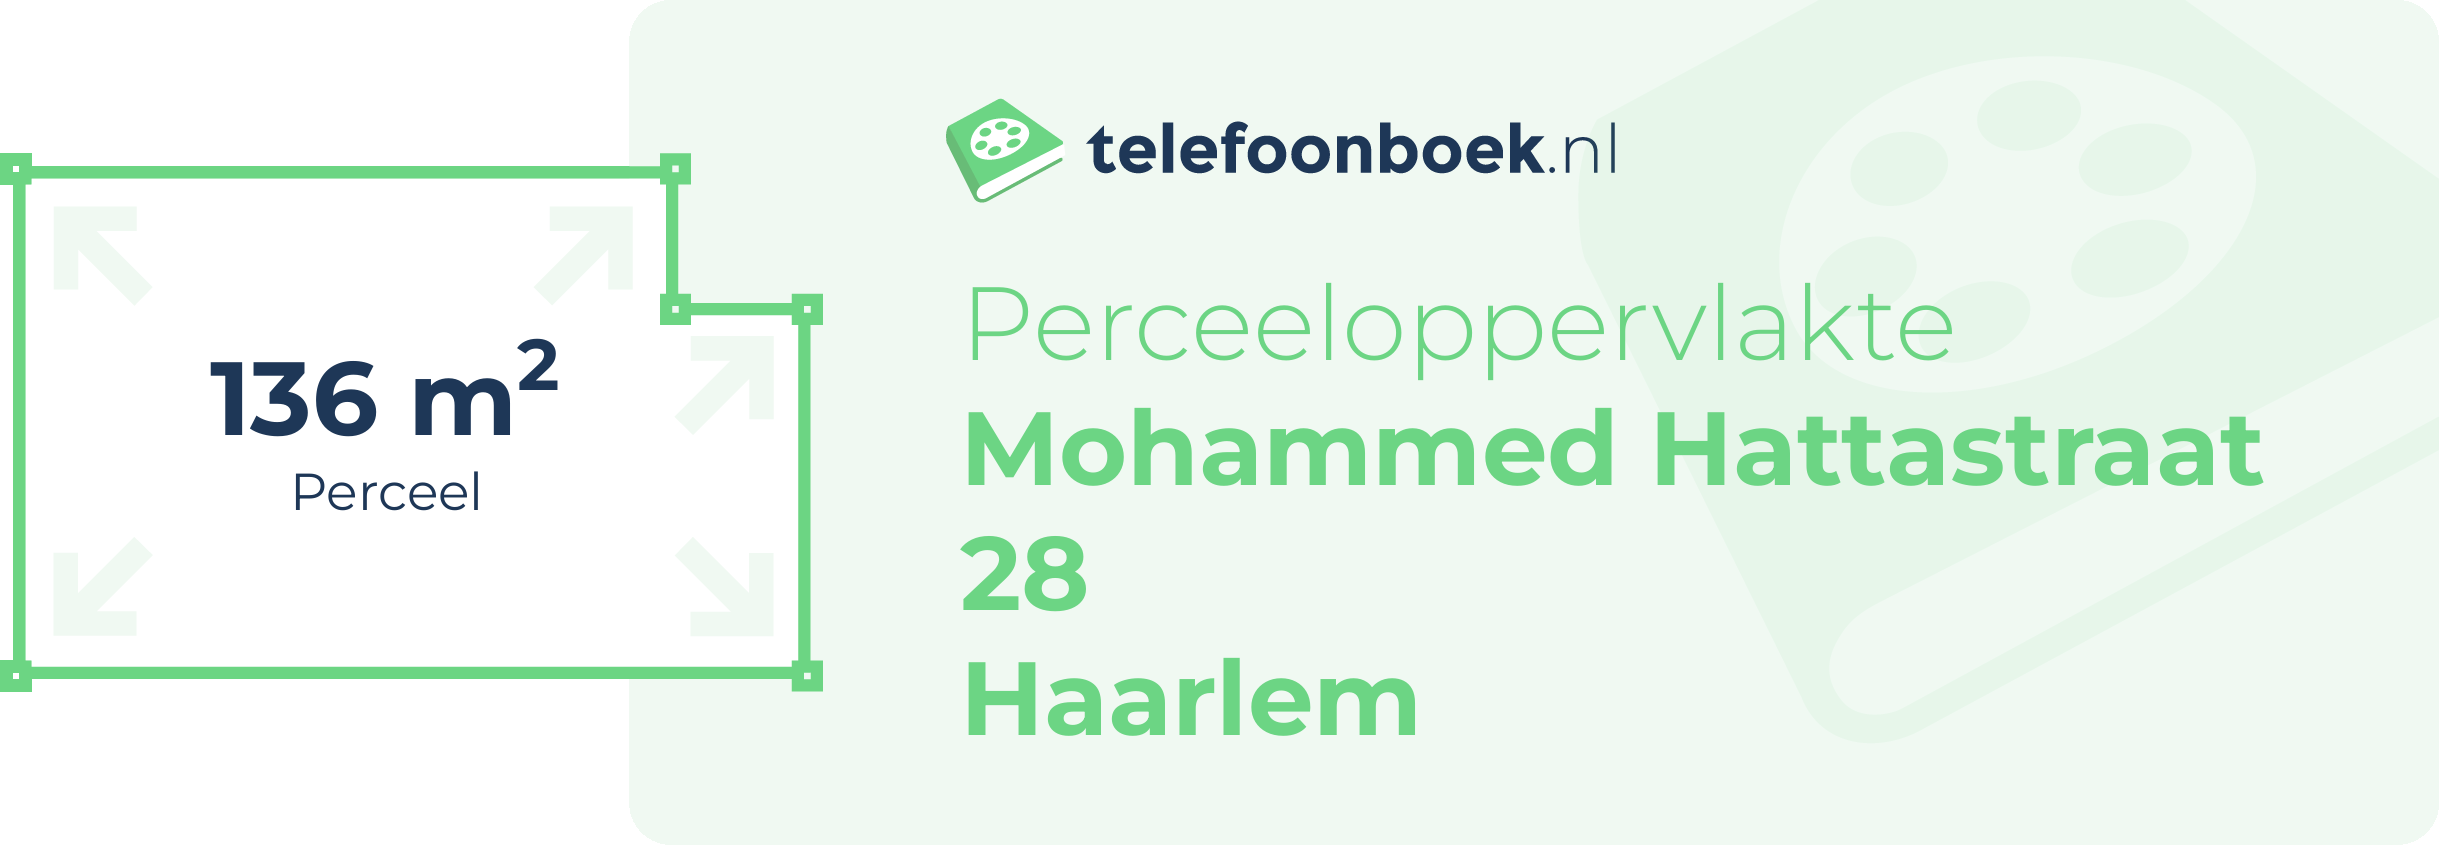 Perceeloppervlakte Mohammed Hattastraat 28 Haarlem